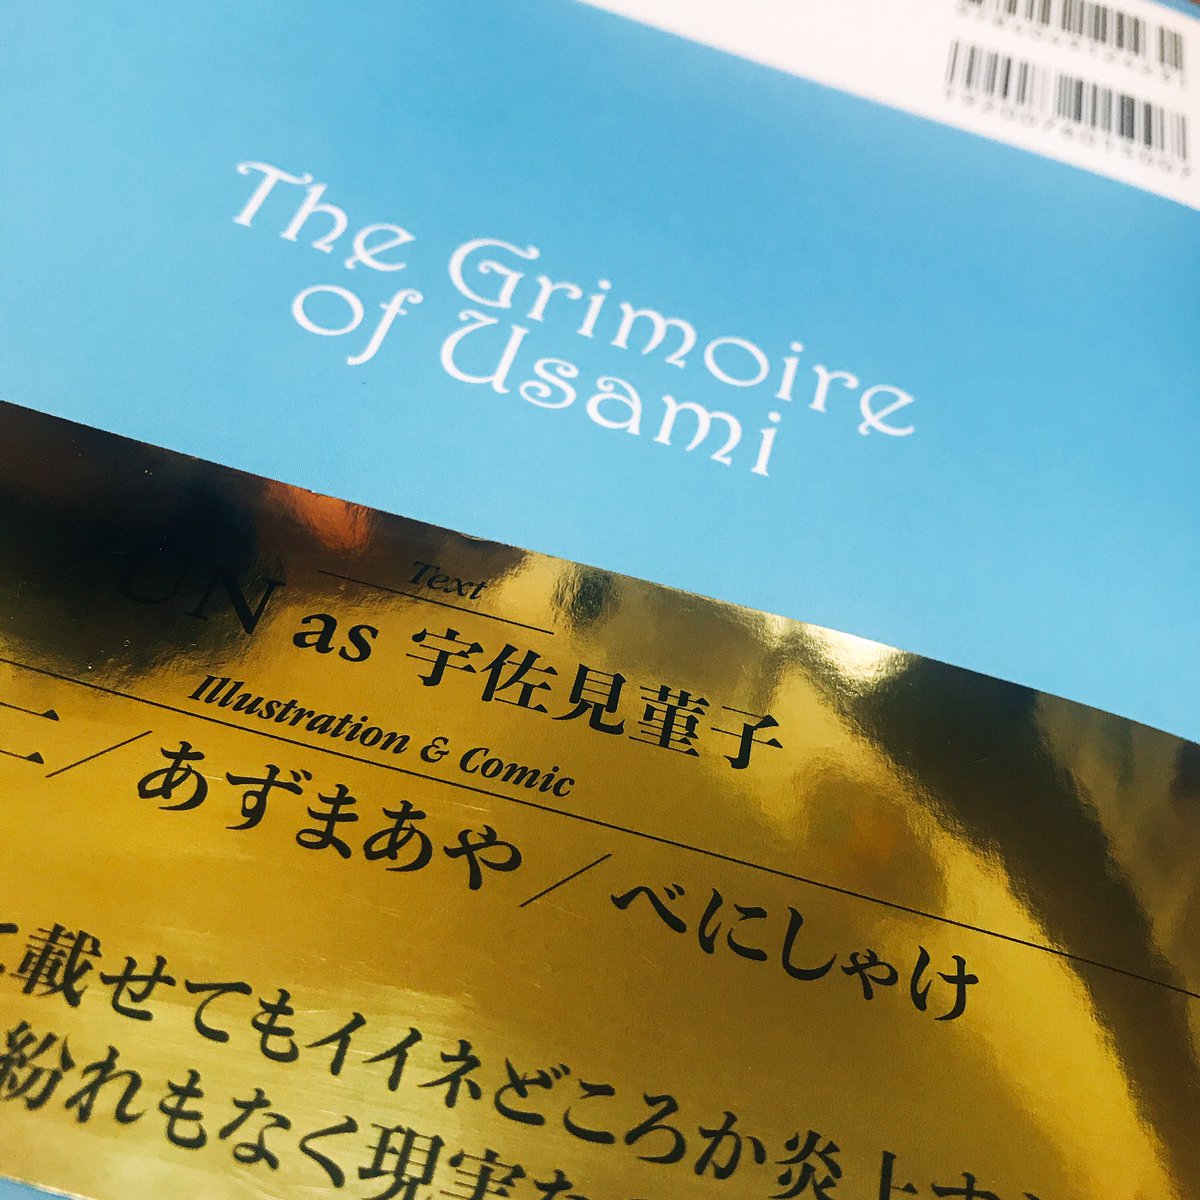 【お知らせ】本日発売の「The Grimoire of Usami 秘封倶楽部異界撮影記録」の一部挿絵を担当させていただきました。たのしい弾幕花火大会の審査員たちのリアクション部分です。よろしくおねがいします?
https://t.co/DDAK3x4GB0 